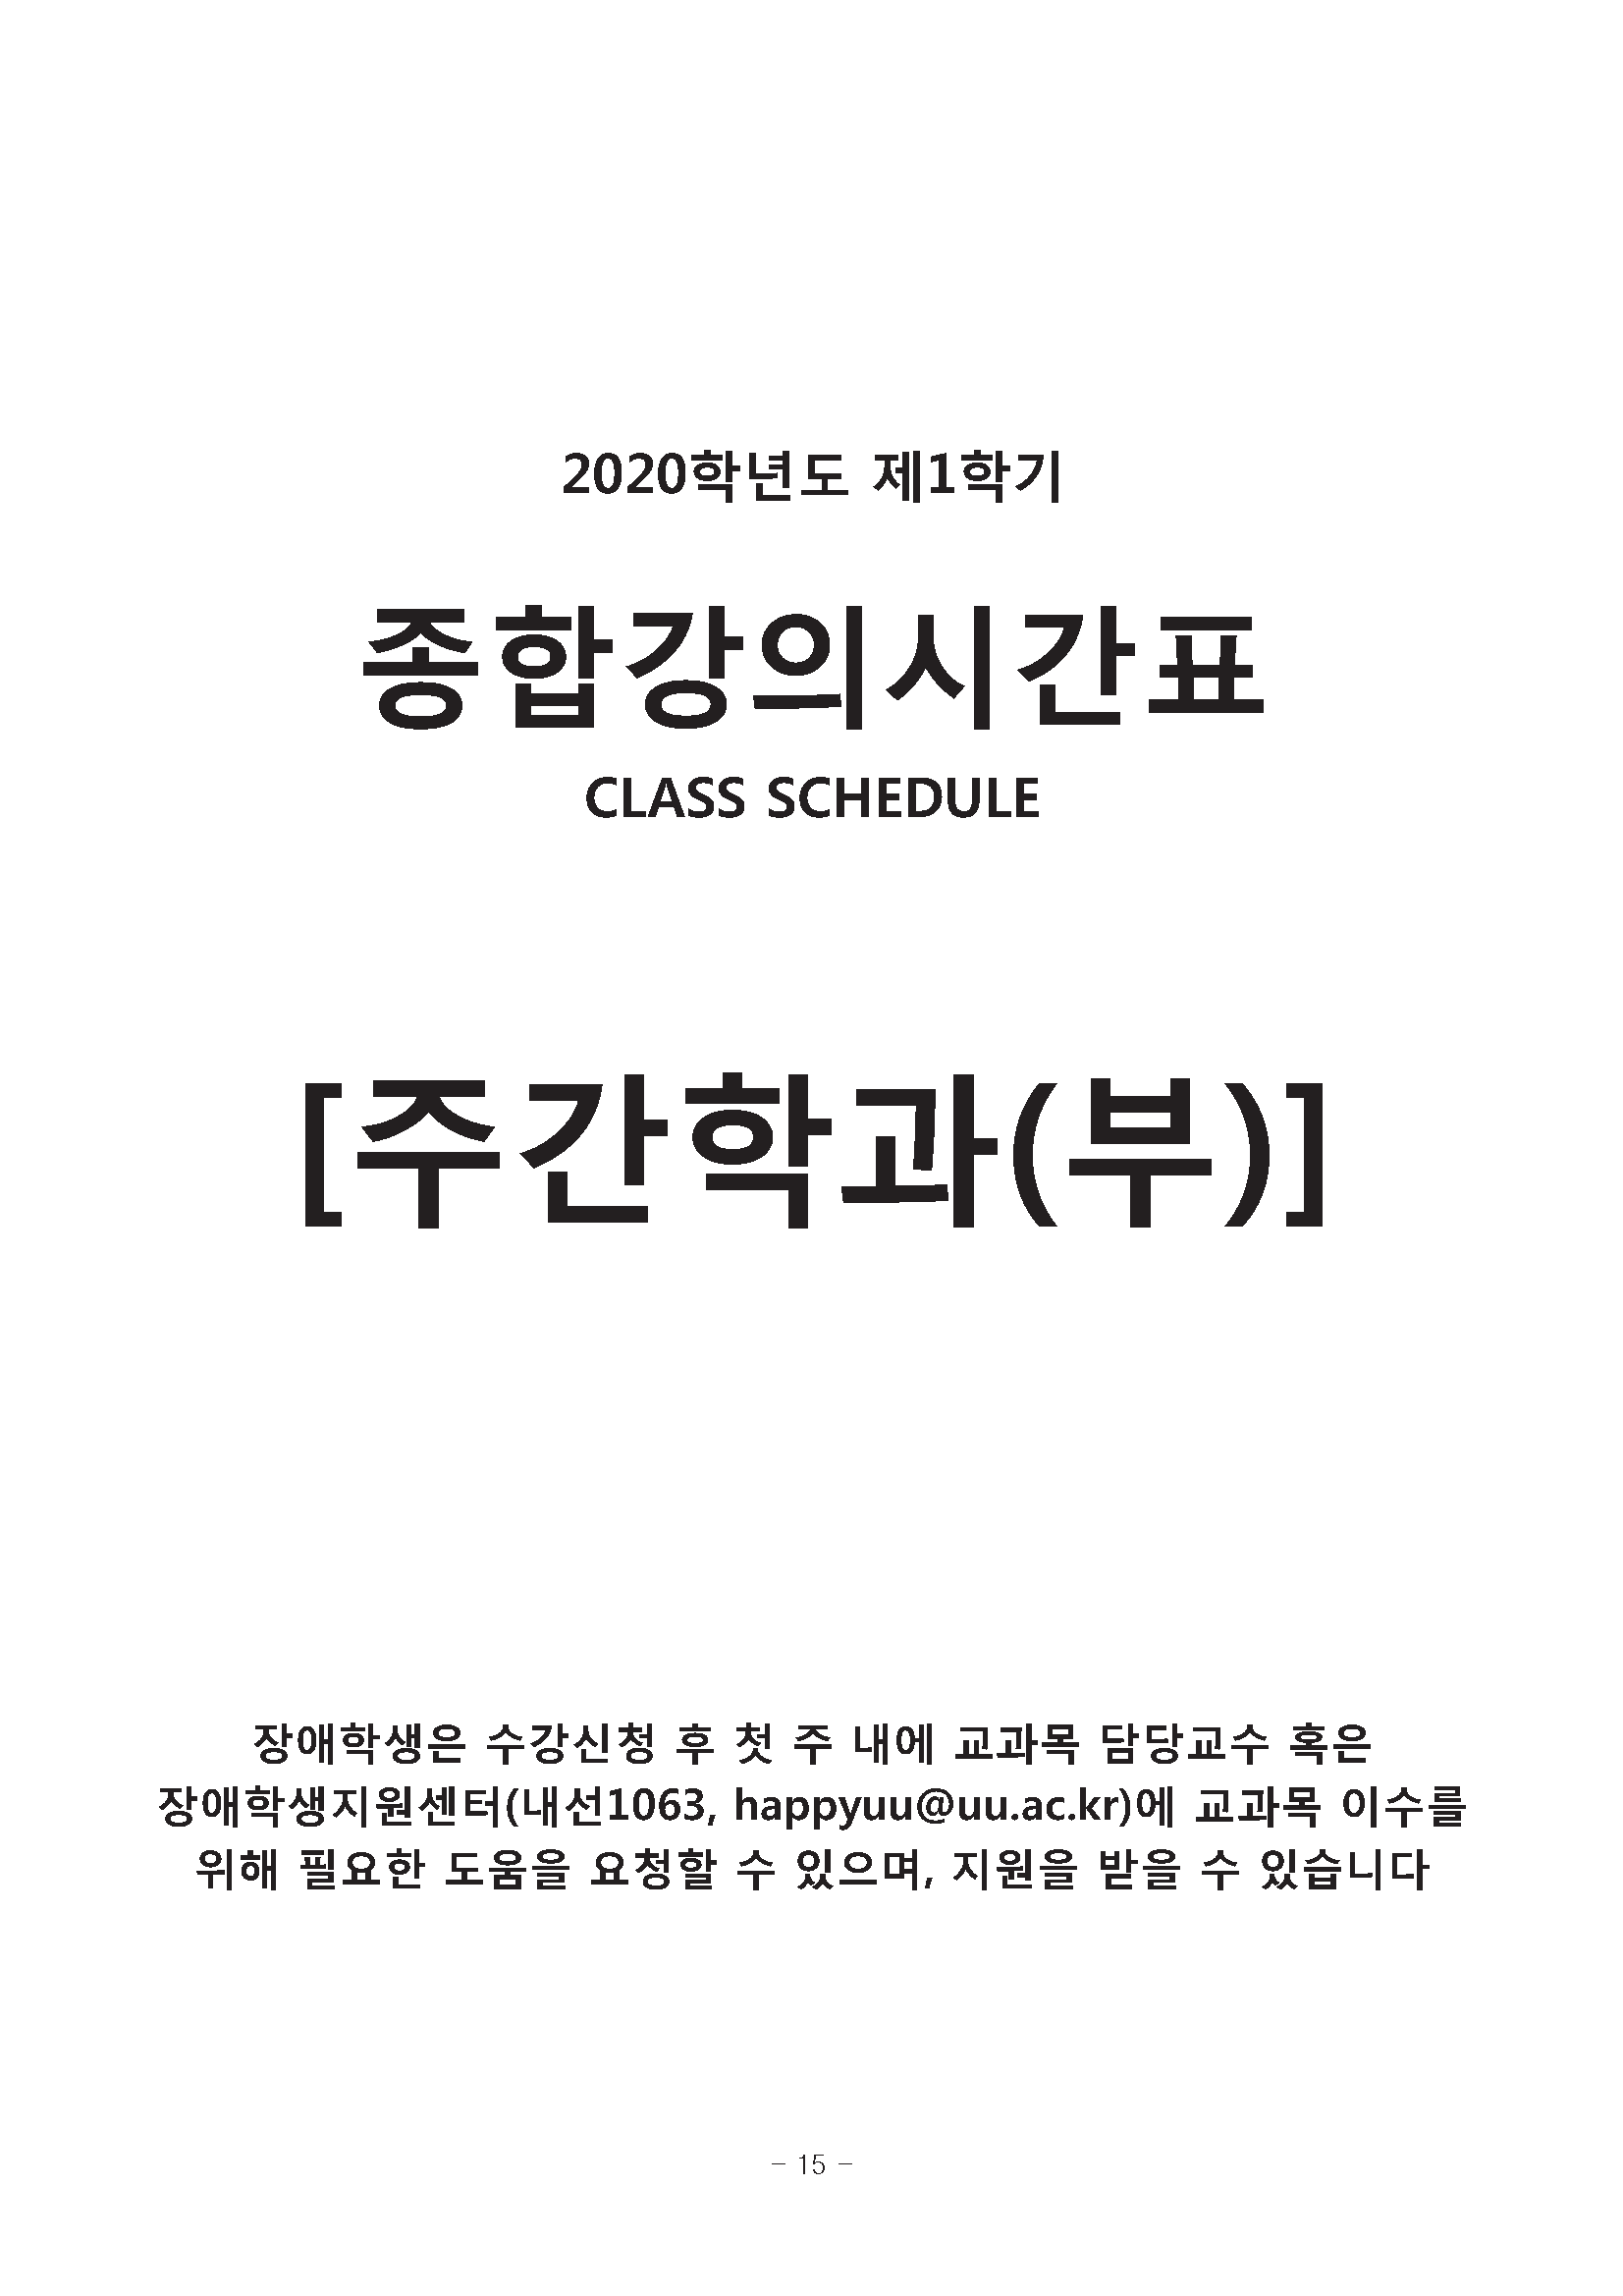 0302-2020학년도 1학기 강의시간표(교무팀_김동욱)15.png